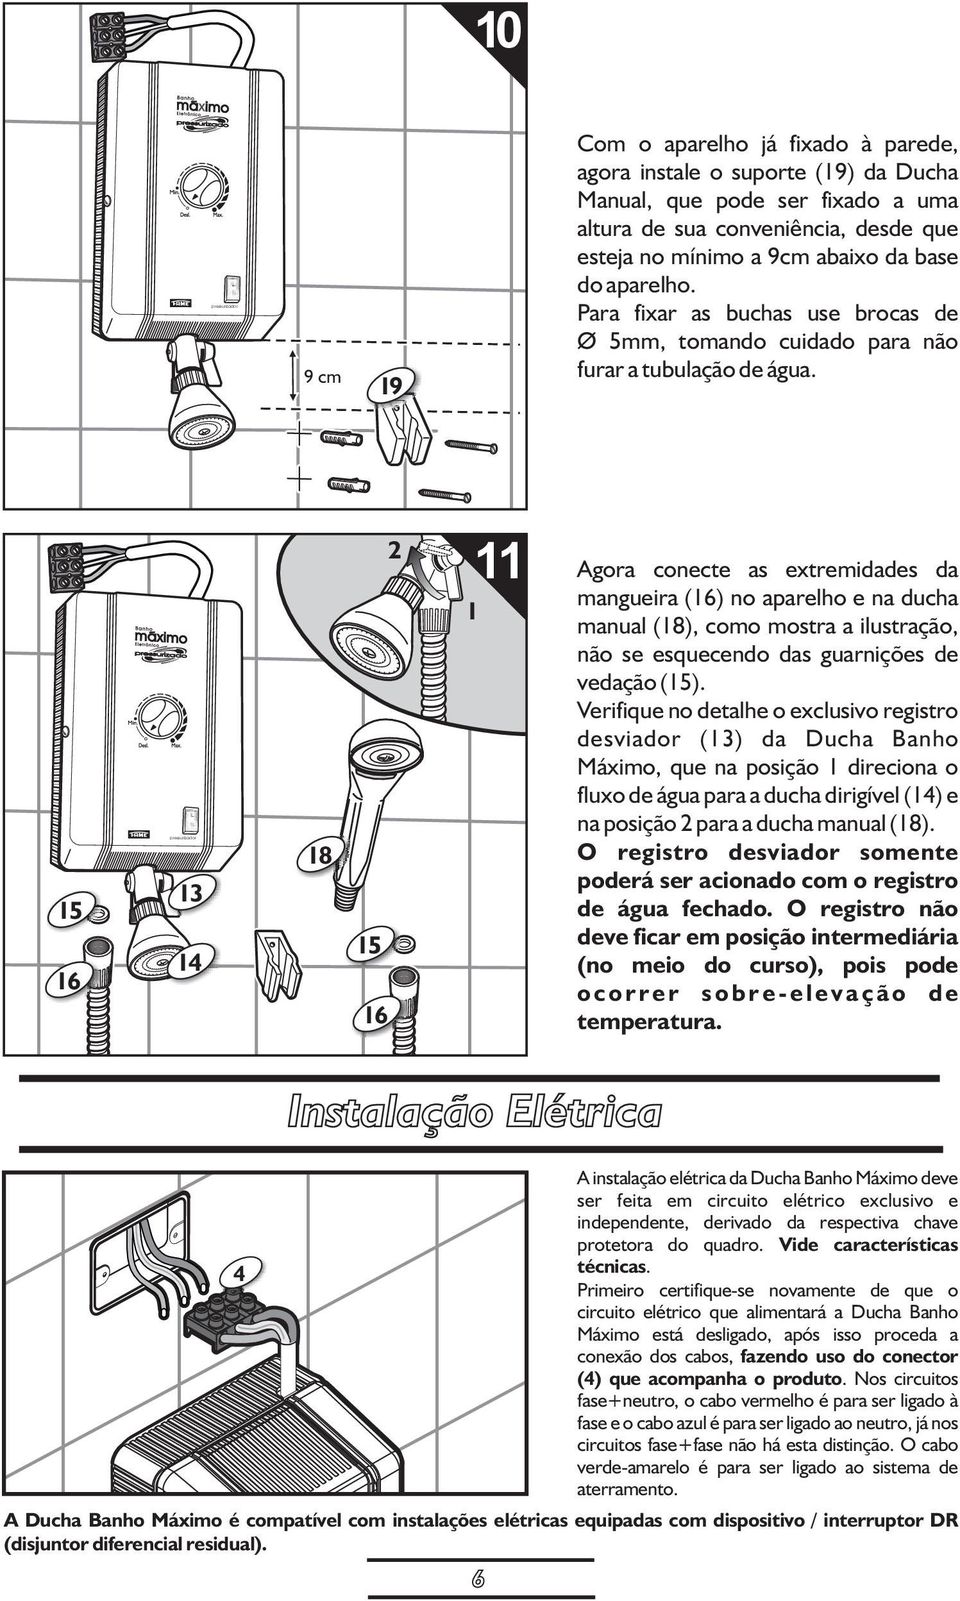 15 16 1 1 18 15 16 11 Agora conecte as extremidades da 1 mangueira (16) no aparelho e na ducha manual (18), como mostra a ilustração, não se esquecendo das guarnições de vedação (15).